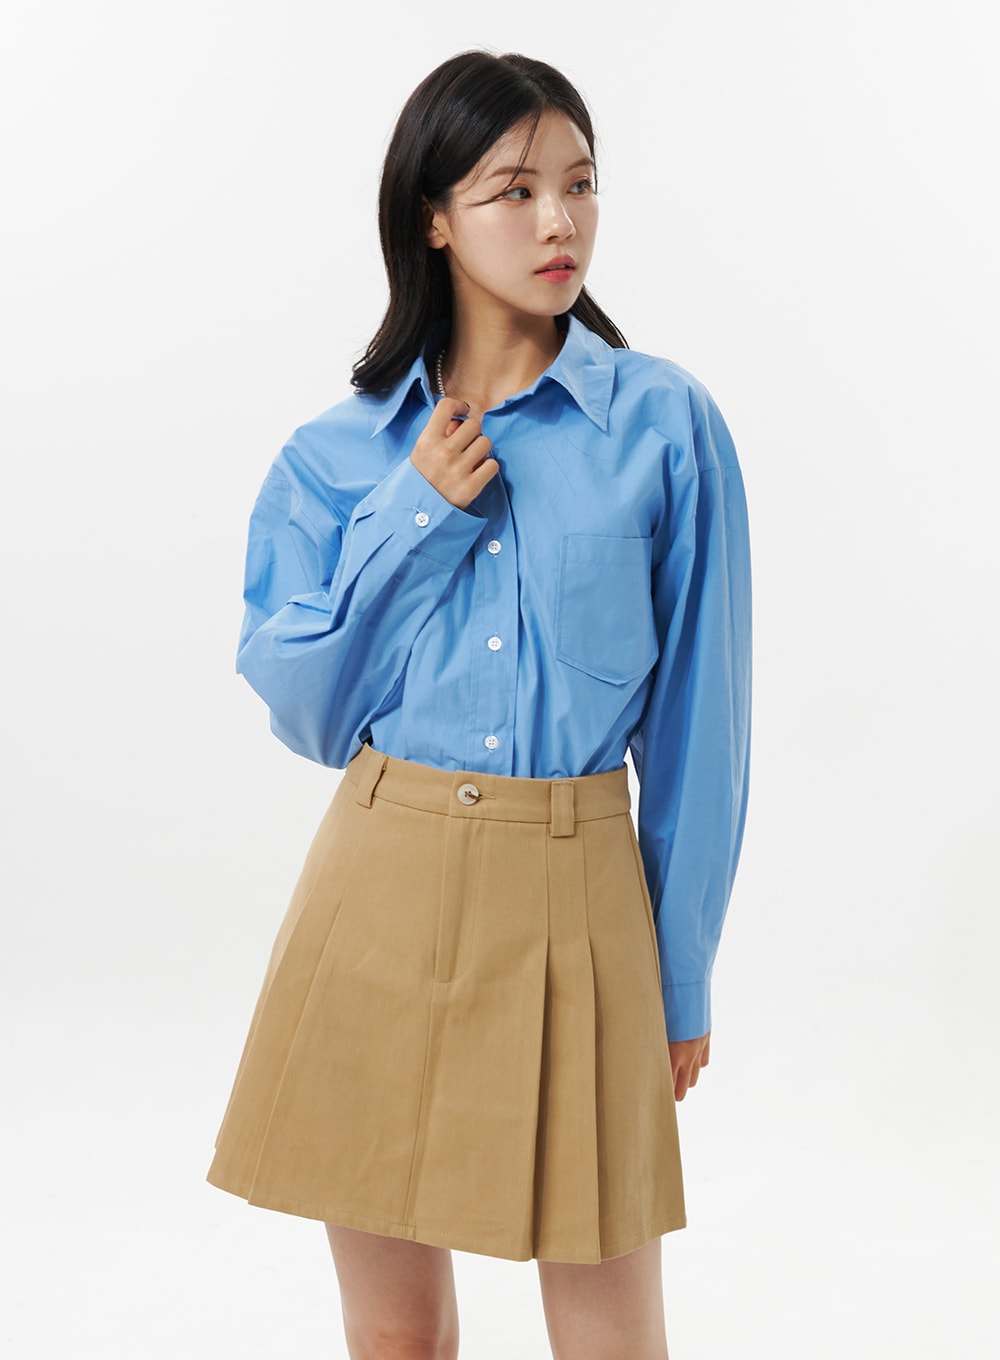 cotton-pleated-mini-skirt-oo312